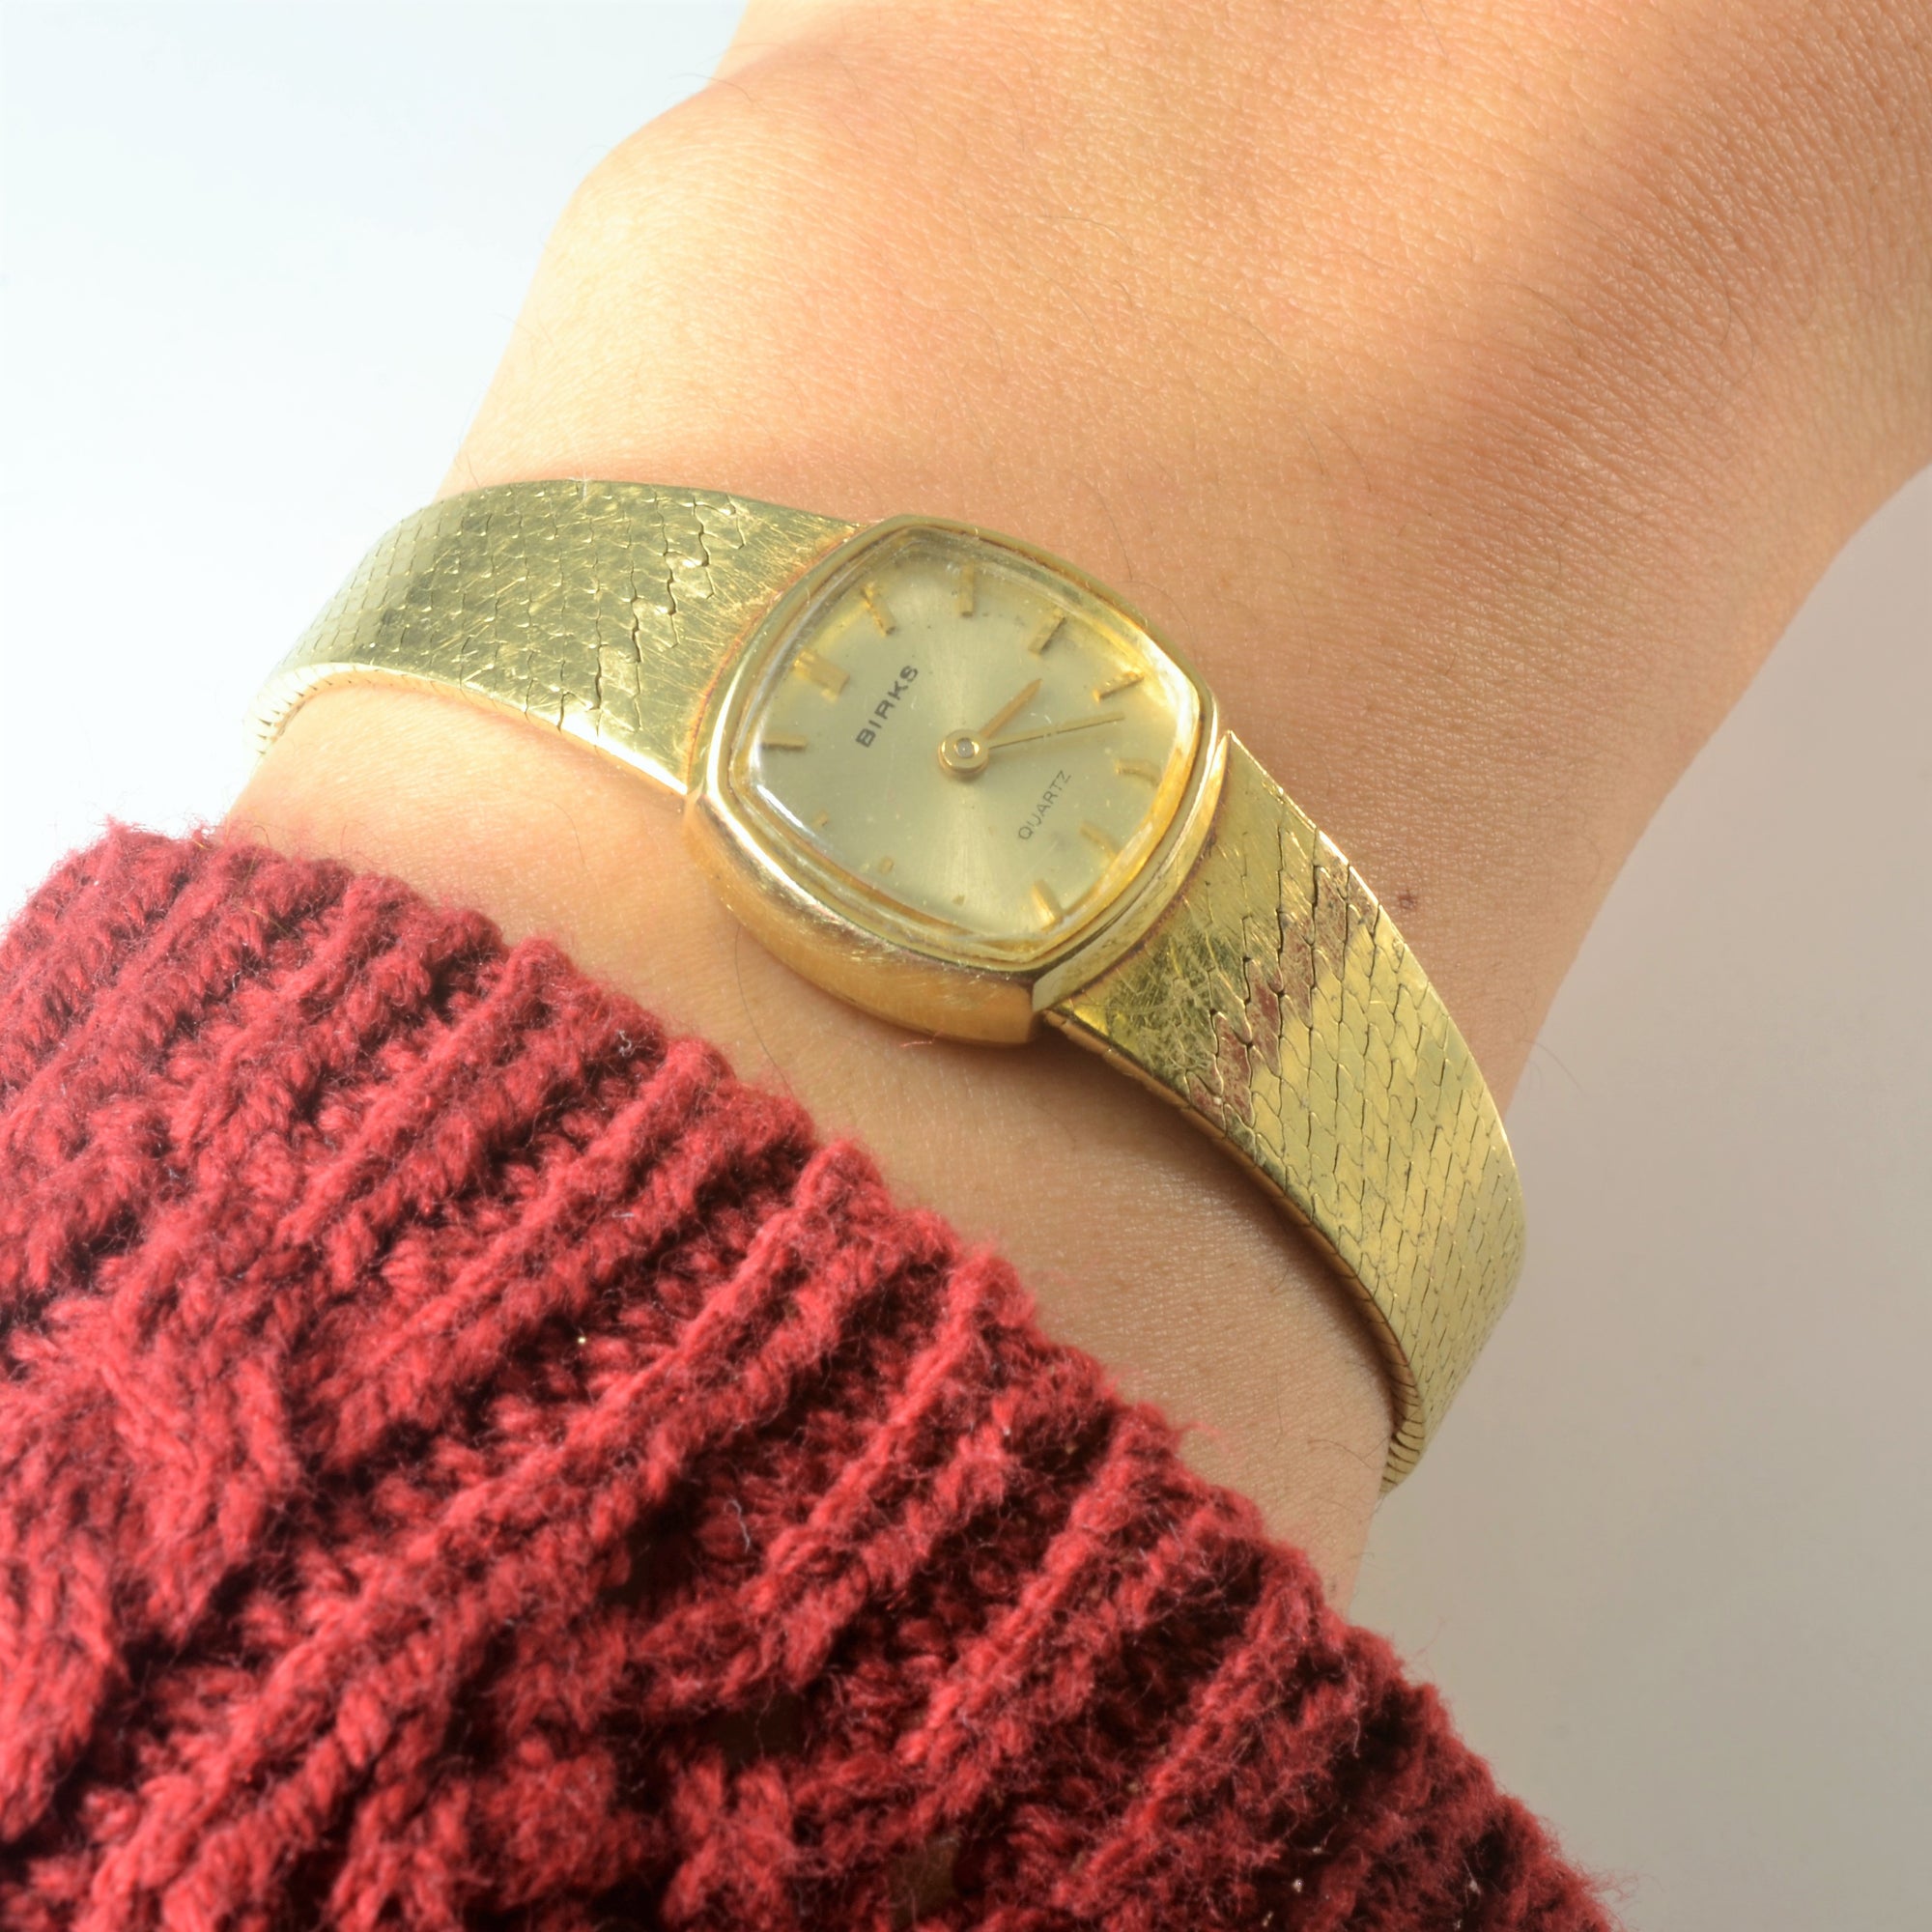 Birks' 14k Gold Watch